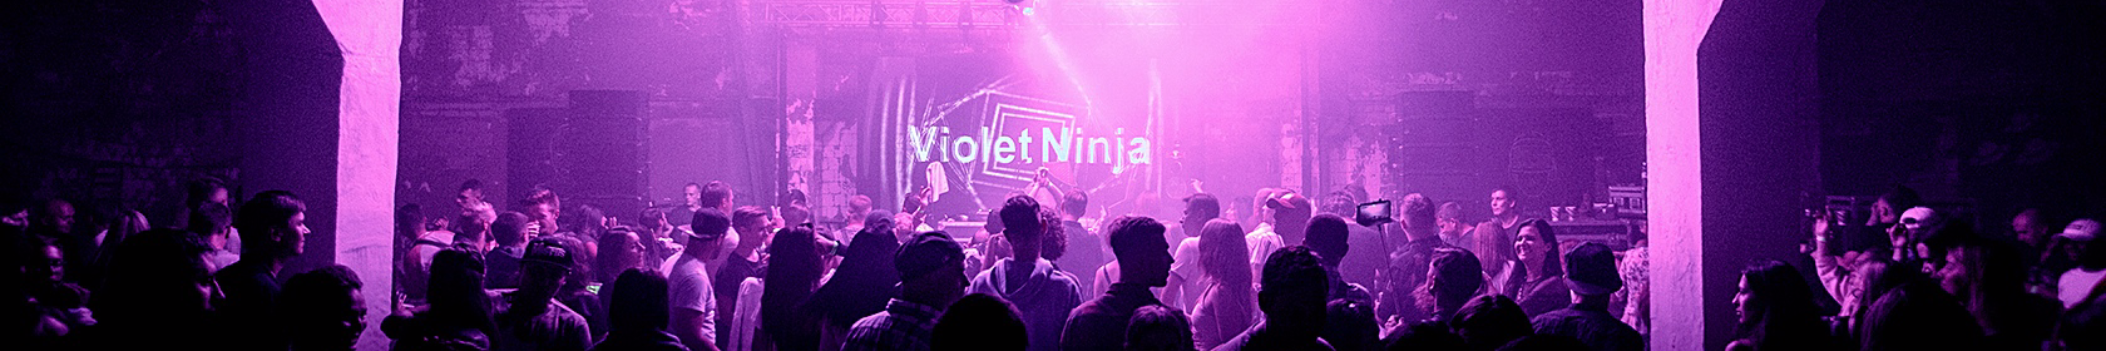 violet ninja soundsystem